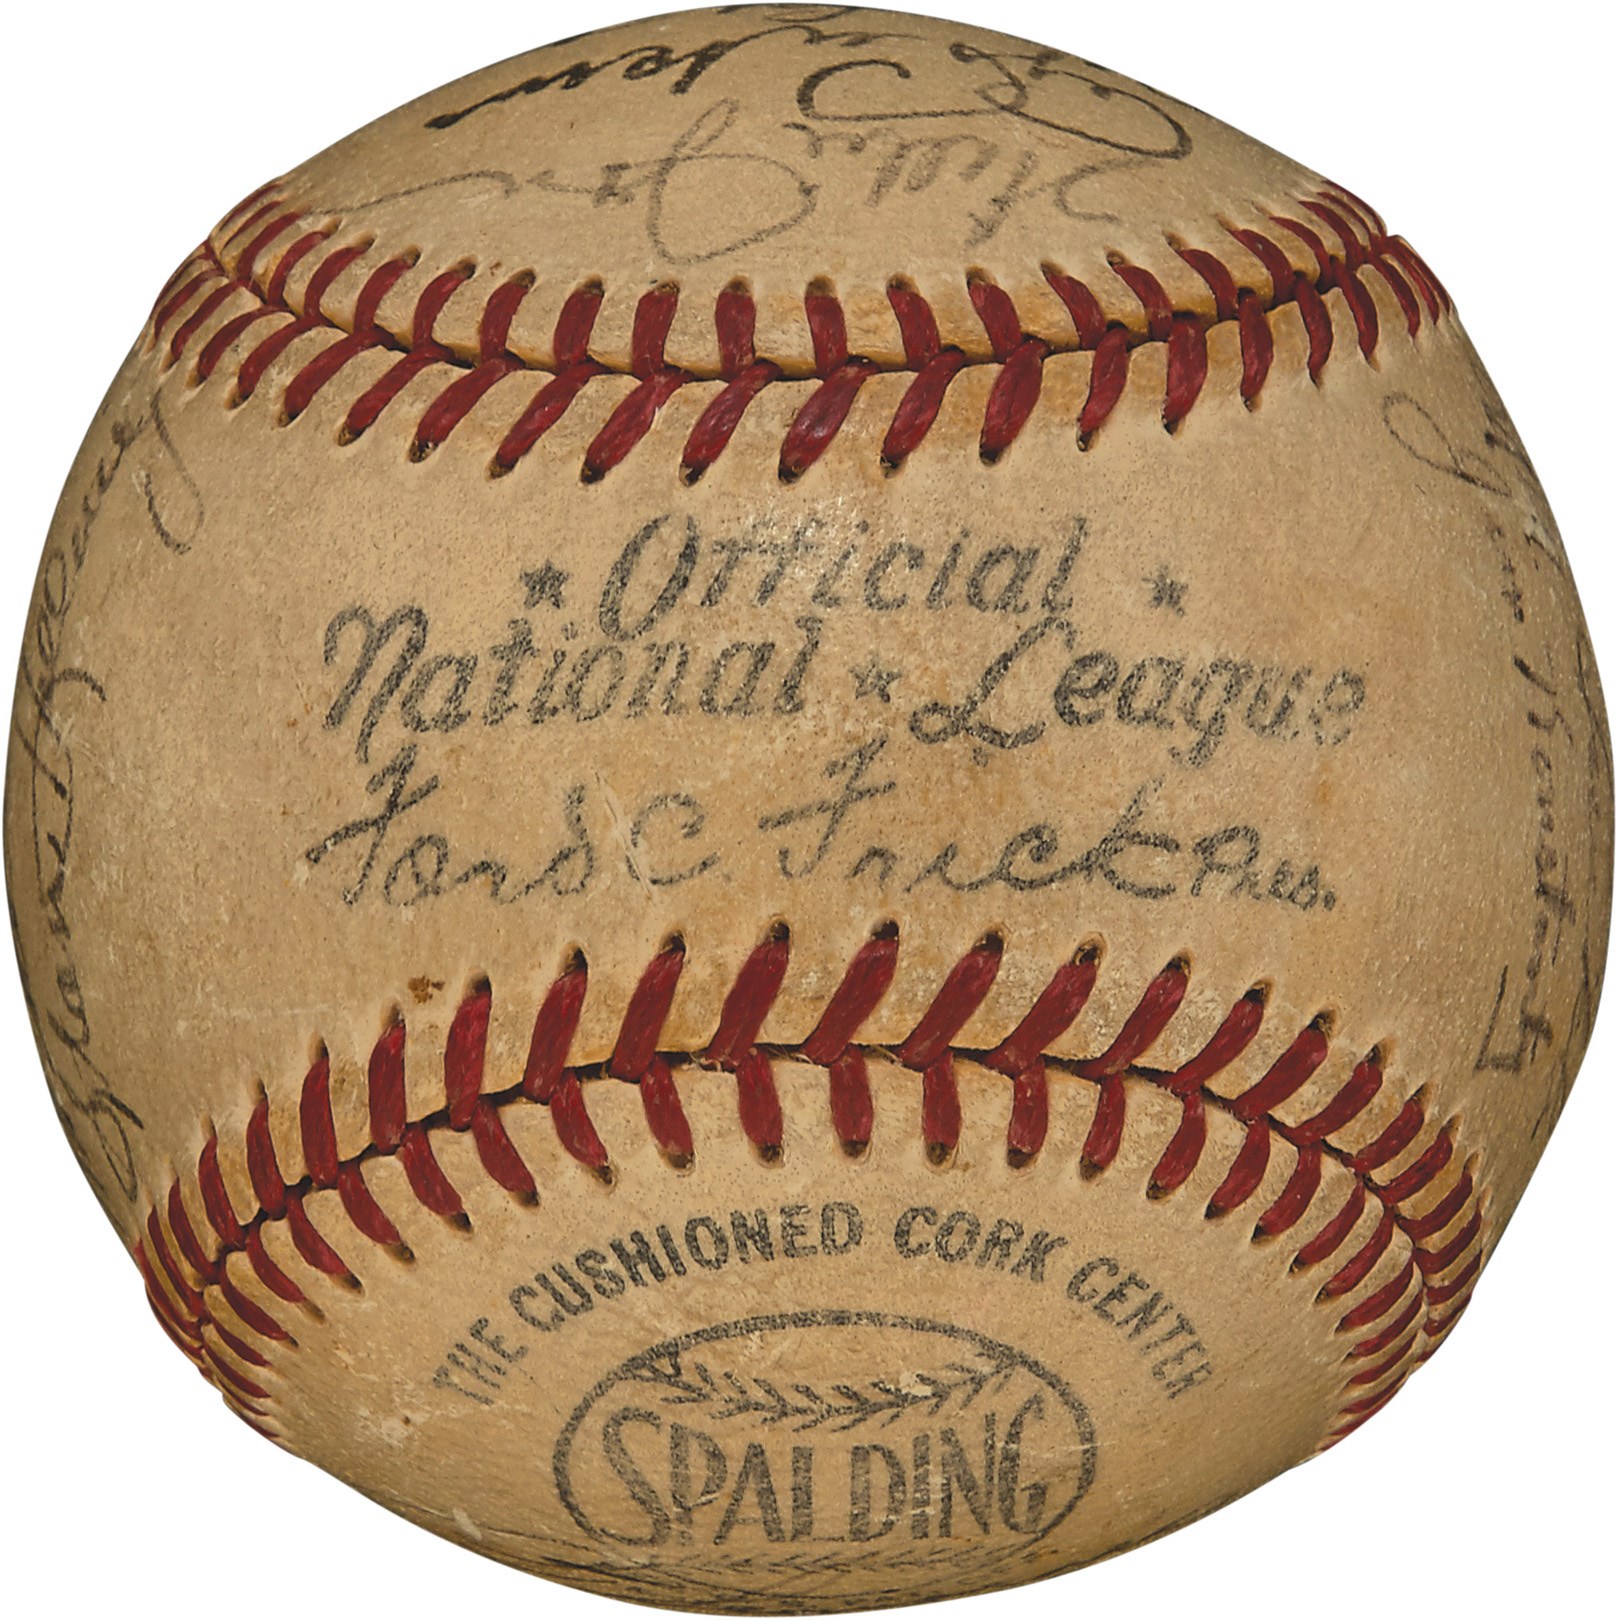 - 1949 Philadelphia Phillies Signed Baseball